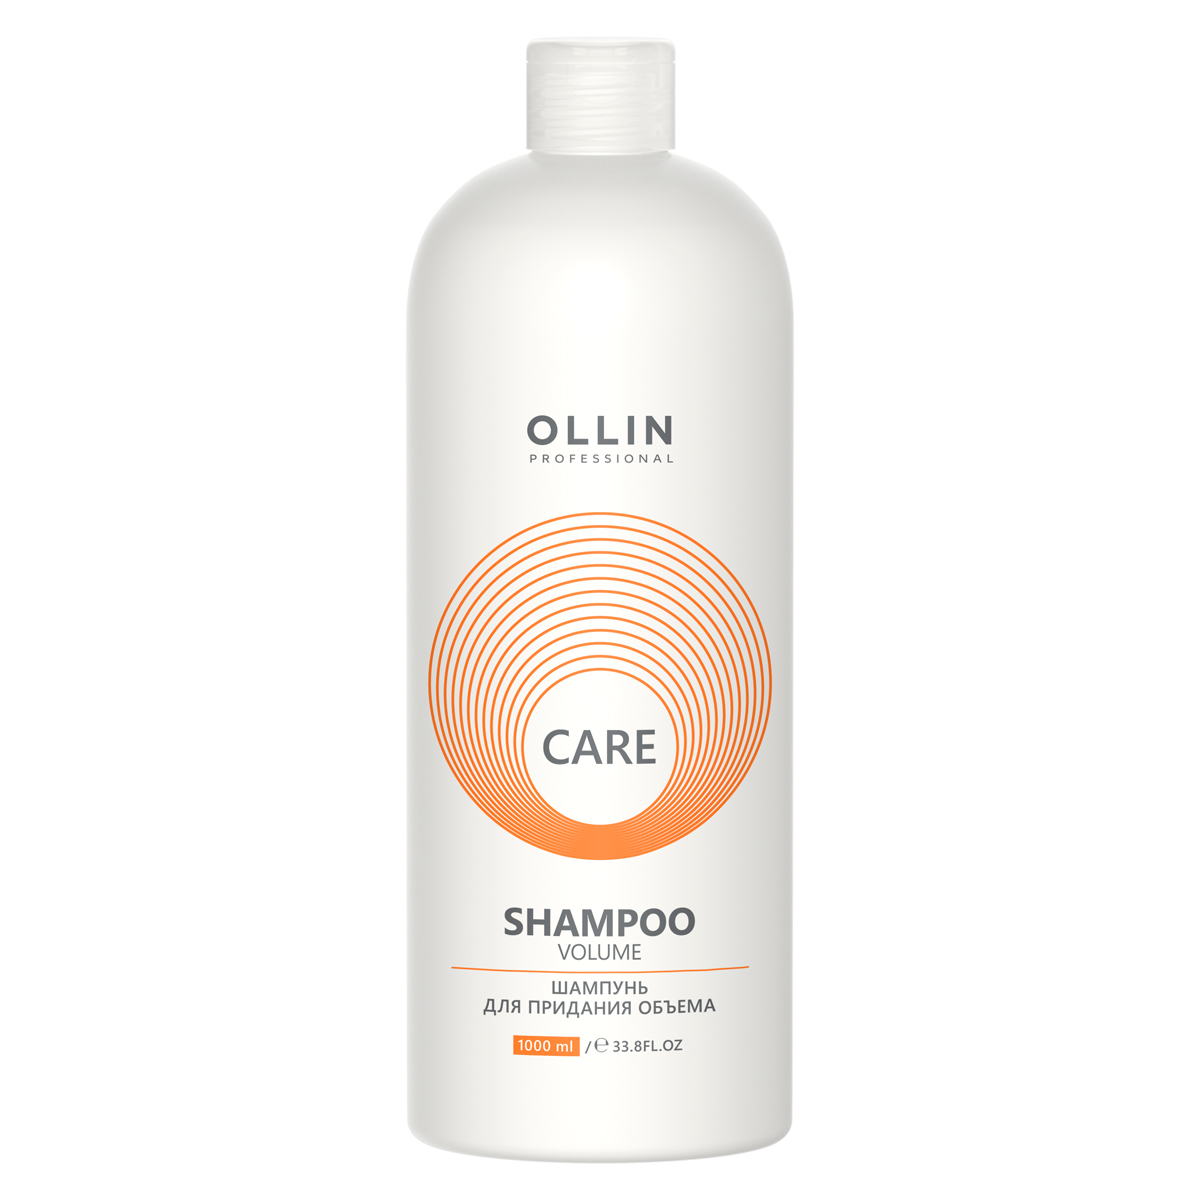 Ollin Professional Шампунь для придания объема, 1000 мл (Ollin Professional, Care) ollin professional шампунь care volume для придания объема 250 мл